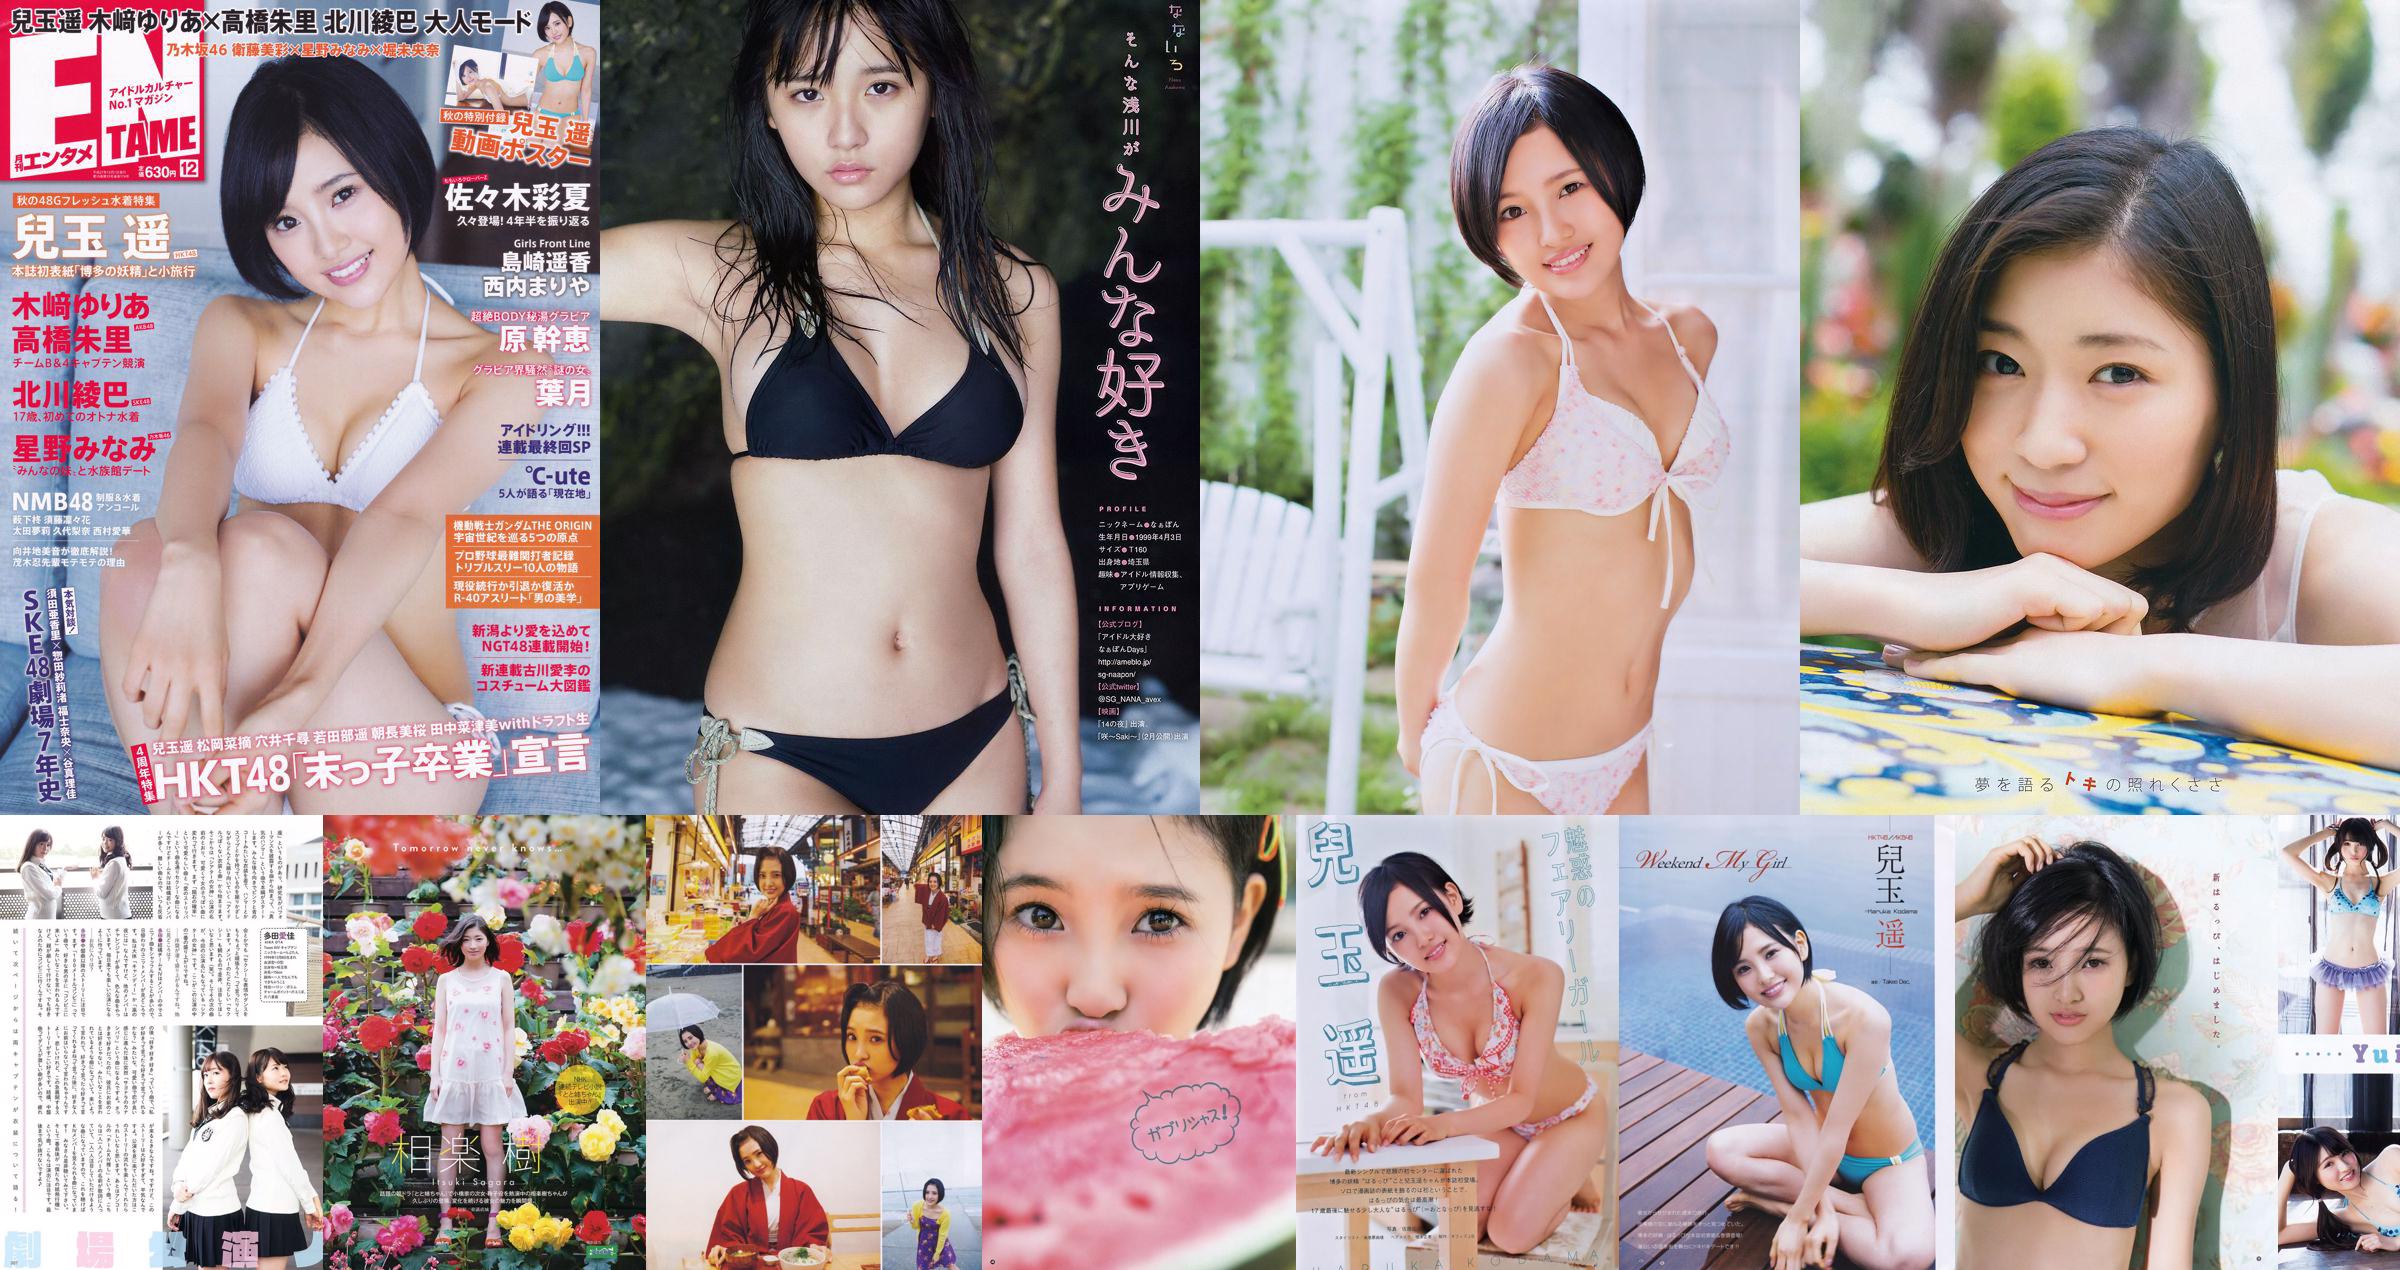 [Young Gangan] Haruka Kodama Itsuki Sagara 2016 No.11 Photo Magazine No.42e2f5 Pagina 1